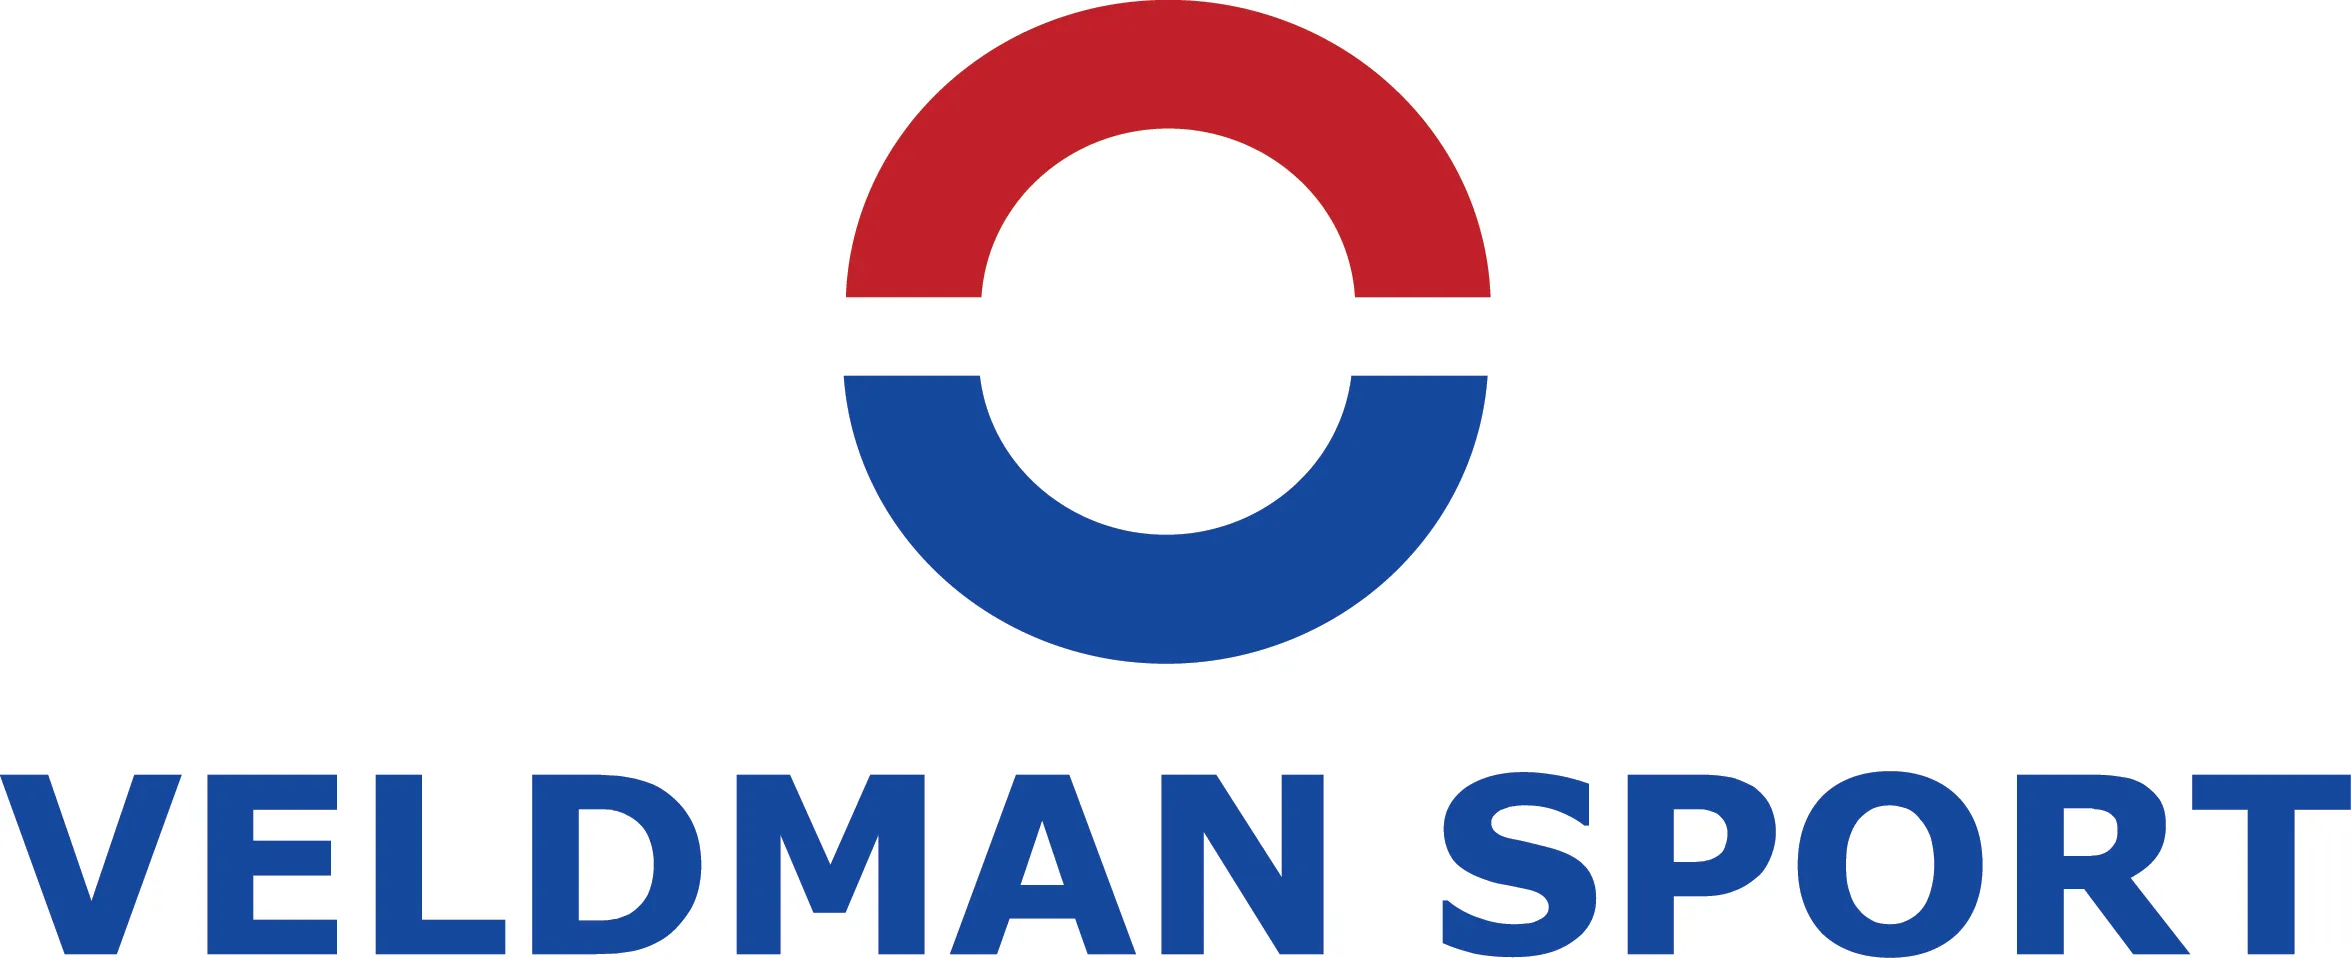 logo veldman sport goed converted